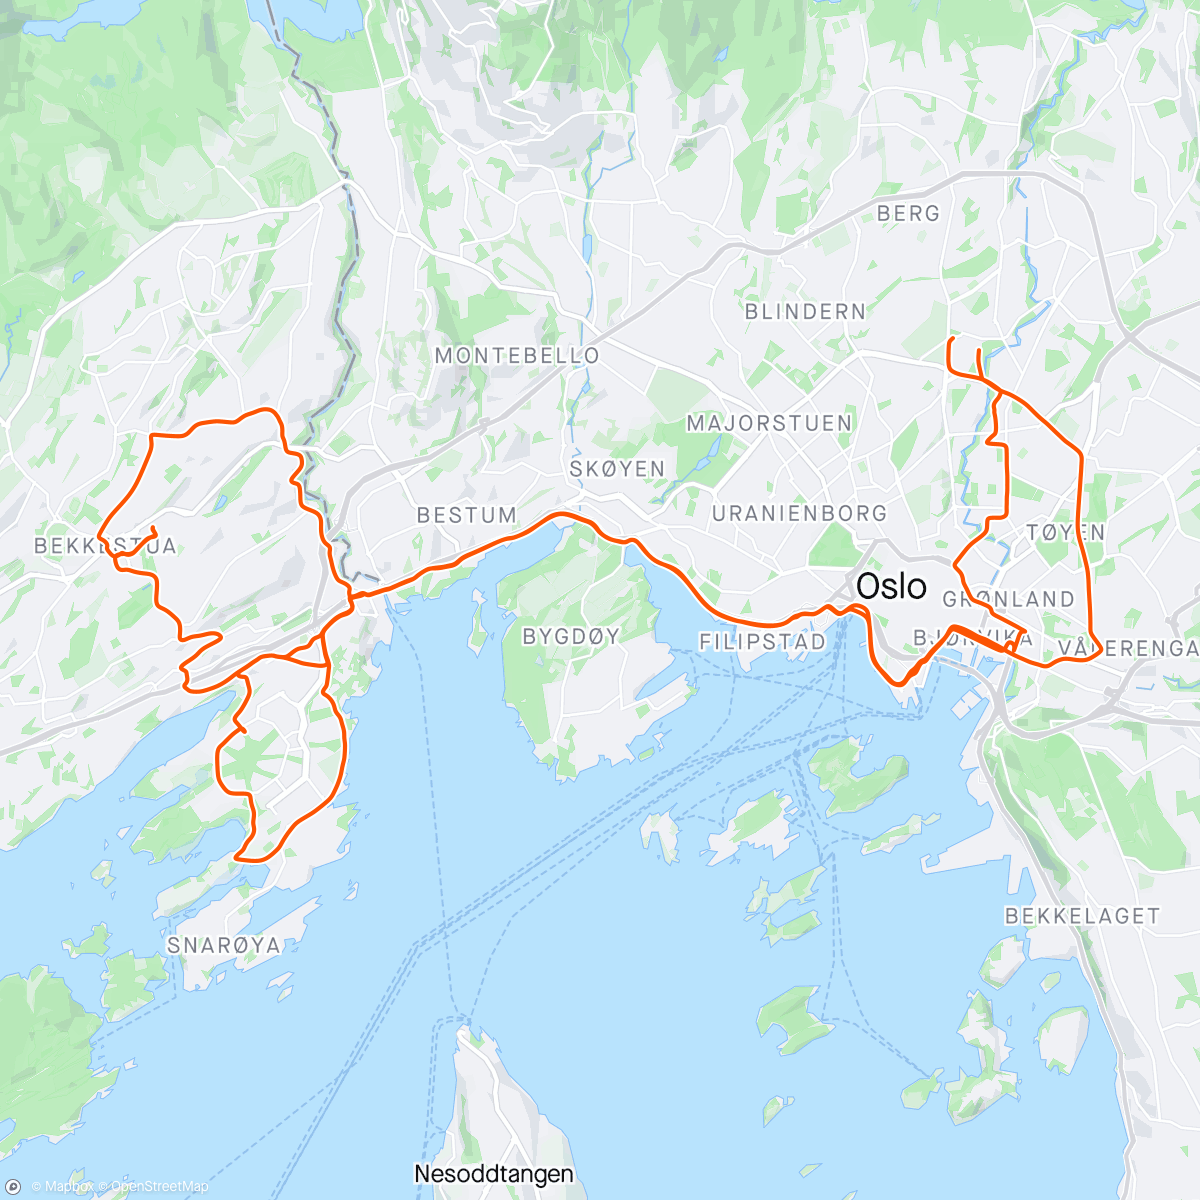 Mapa da atividade, Slow burn - warmup to Holmenkollen Relay run